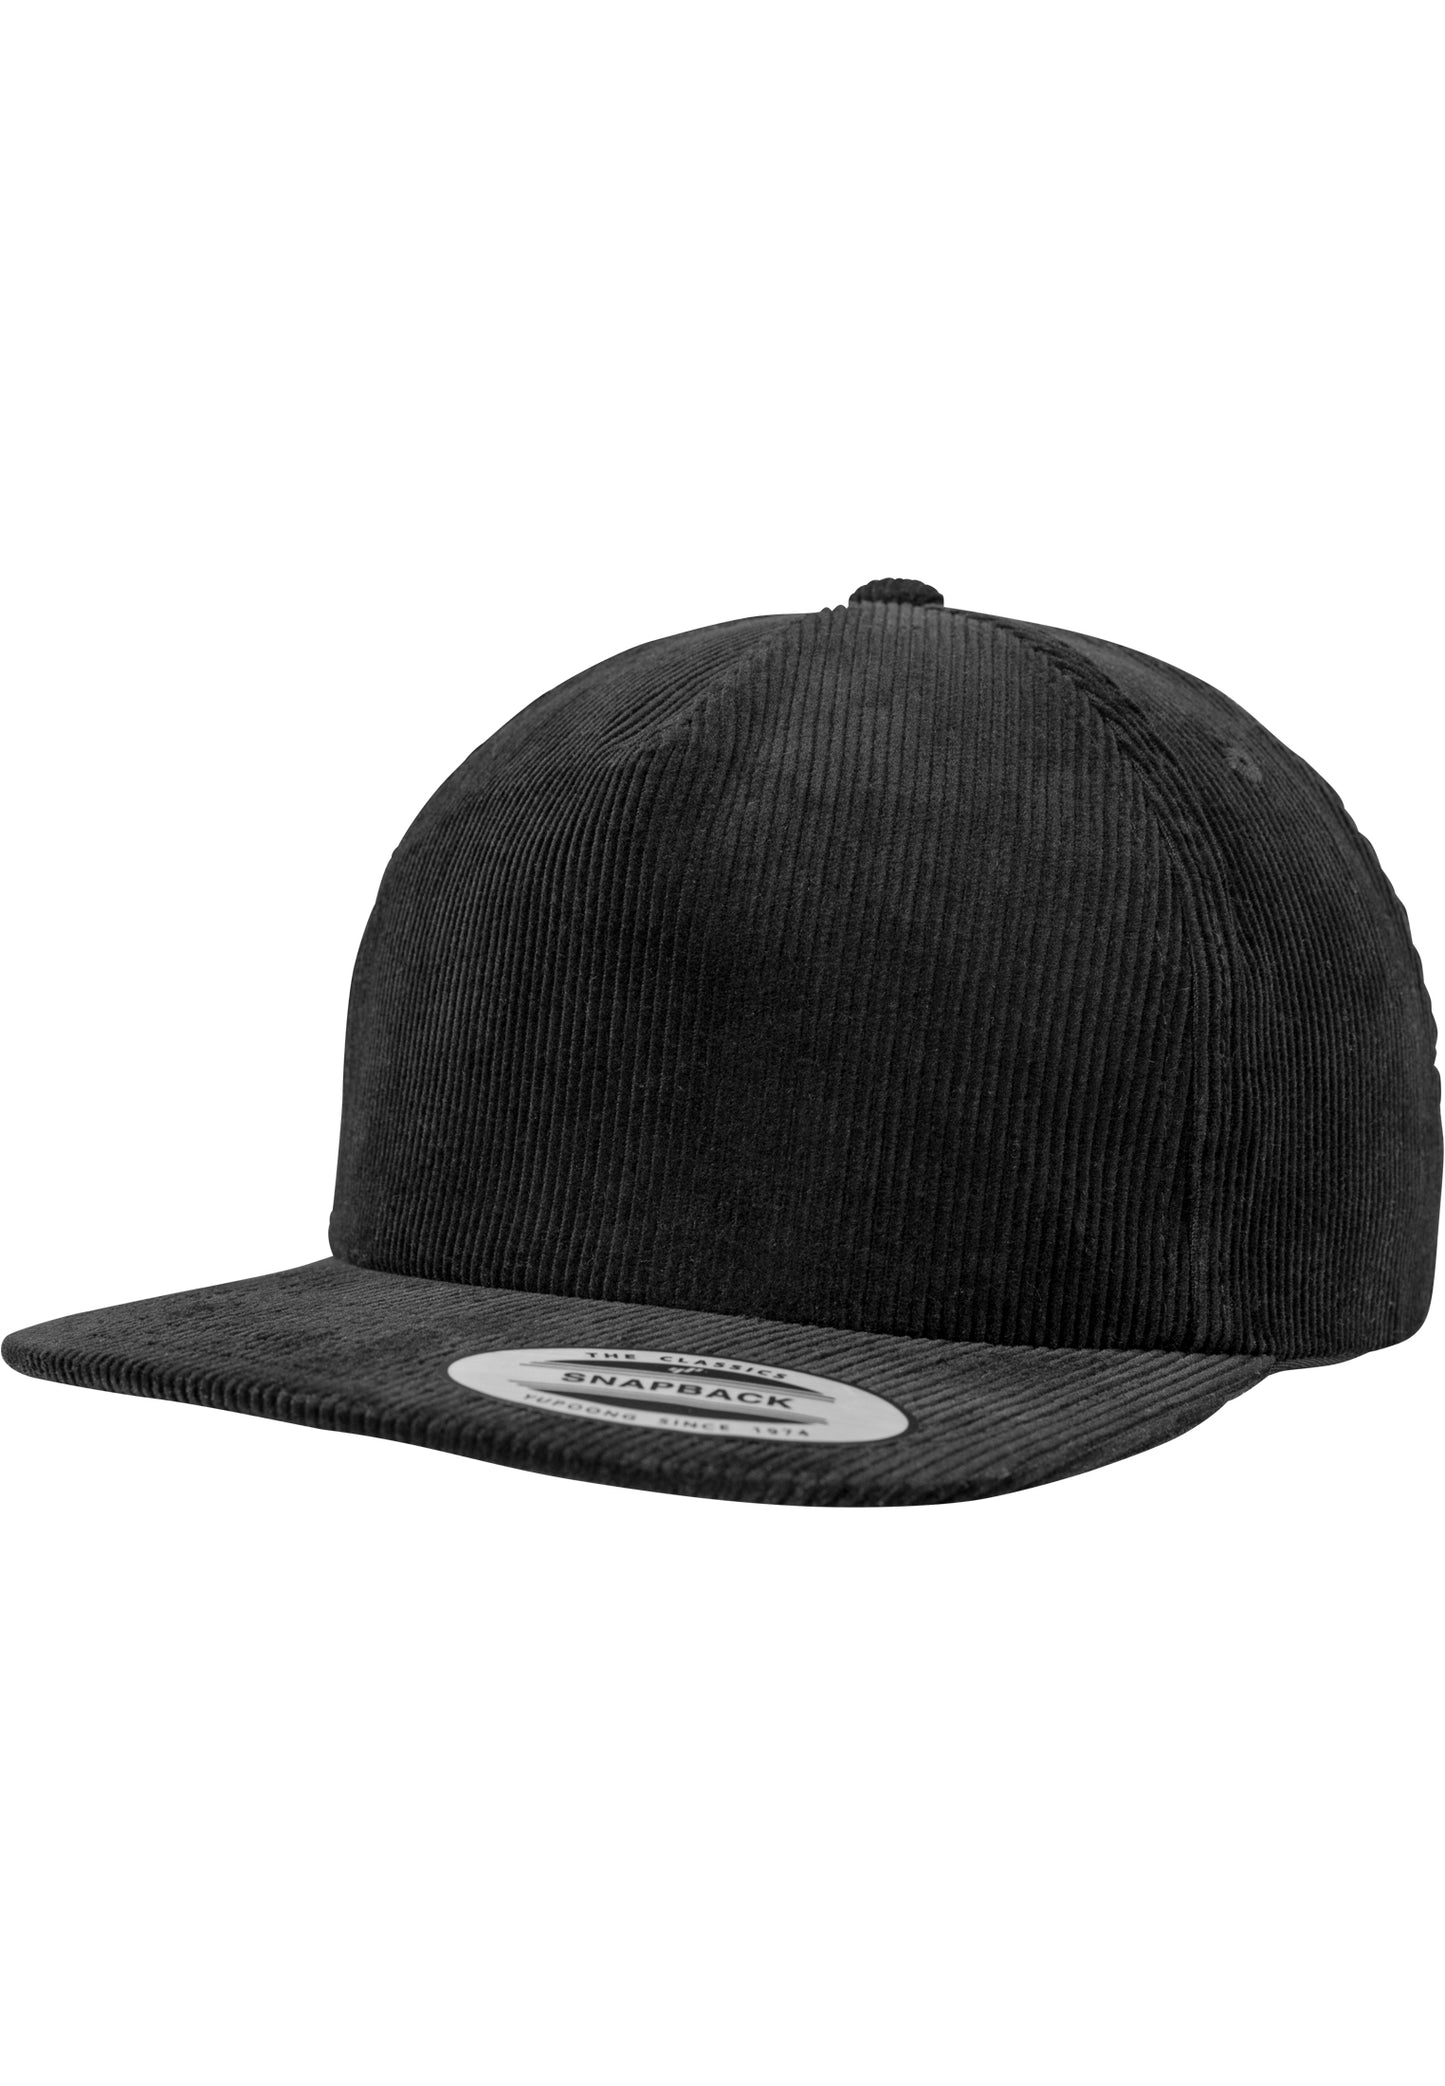 Premium Corduroy Snapback - Black - Headz Up 